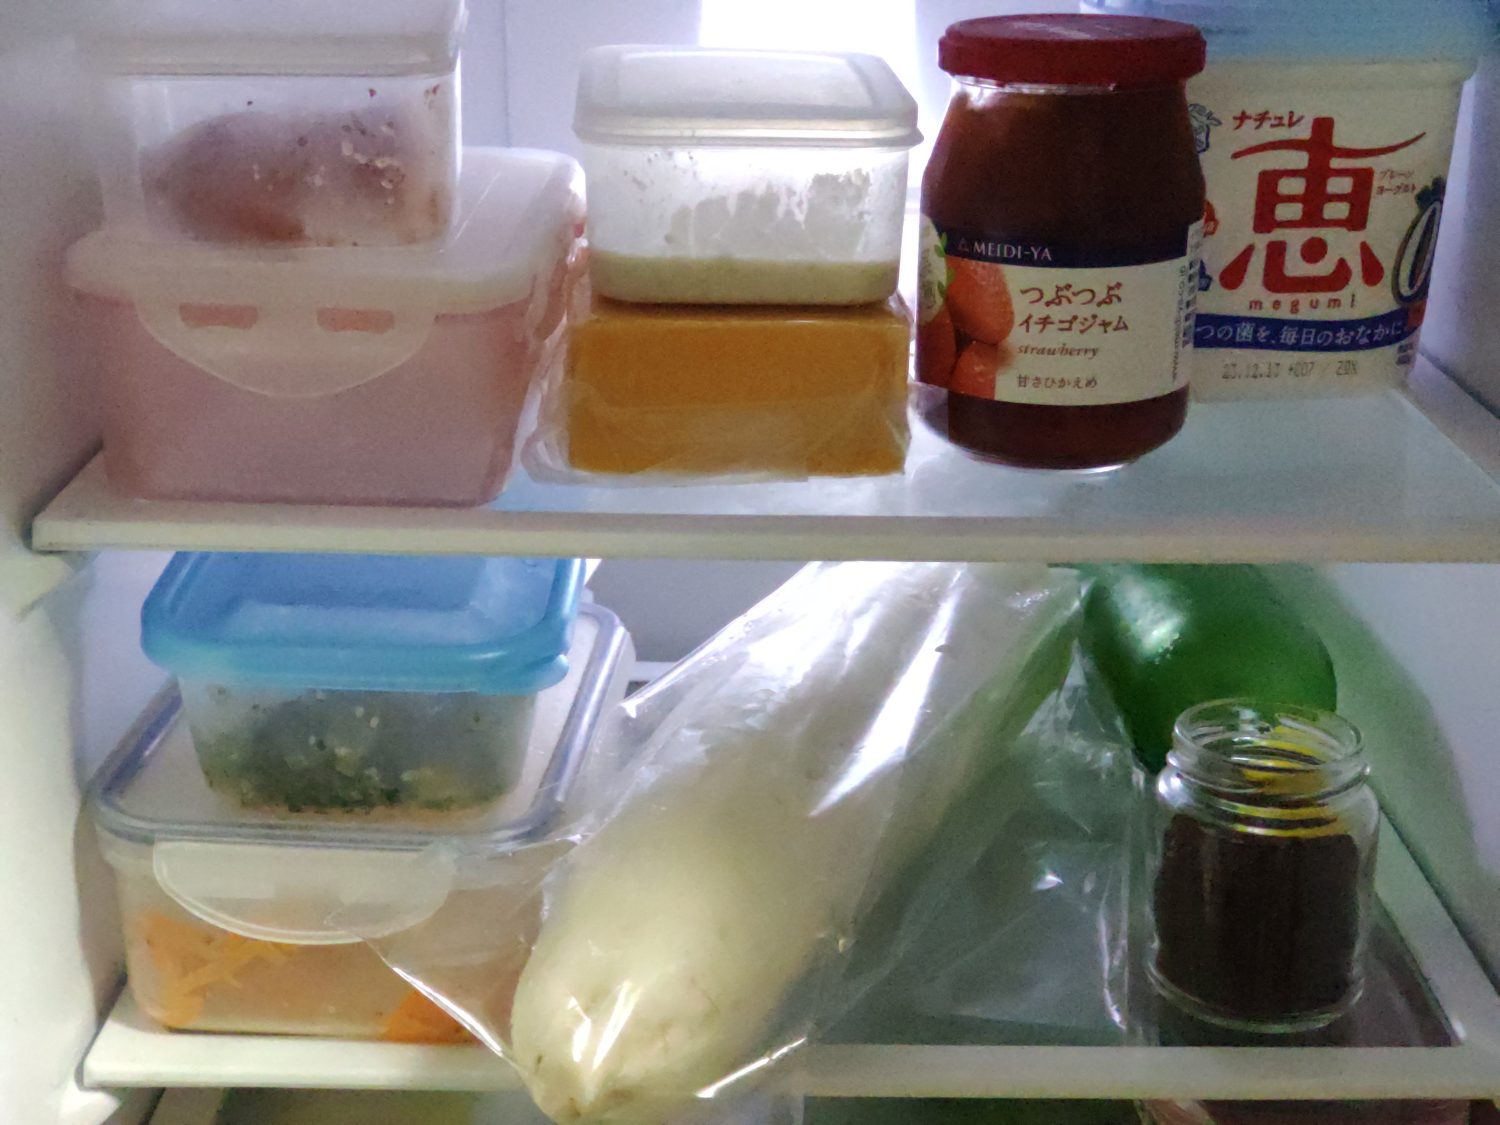 inside-of-fridge